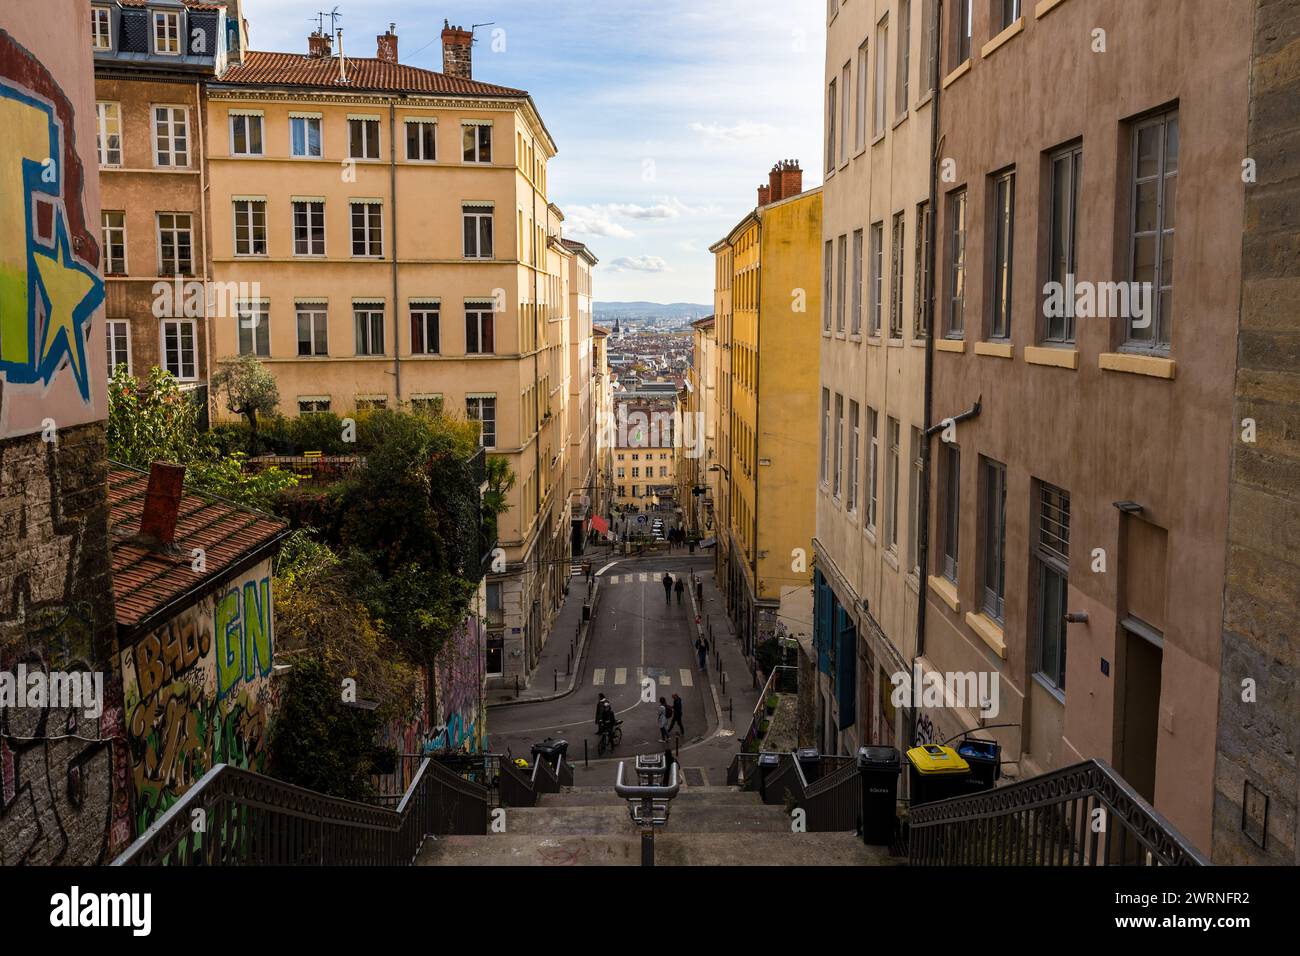 Vue depuis l'escalier de la Rue Poteau, dans le quartier de la Croix-Rousse à Lyon Foto Stock